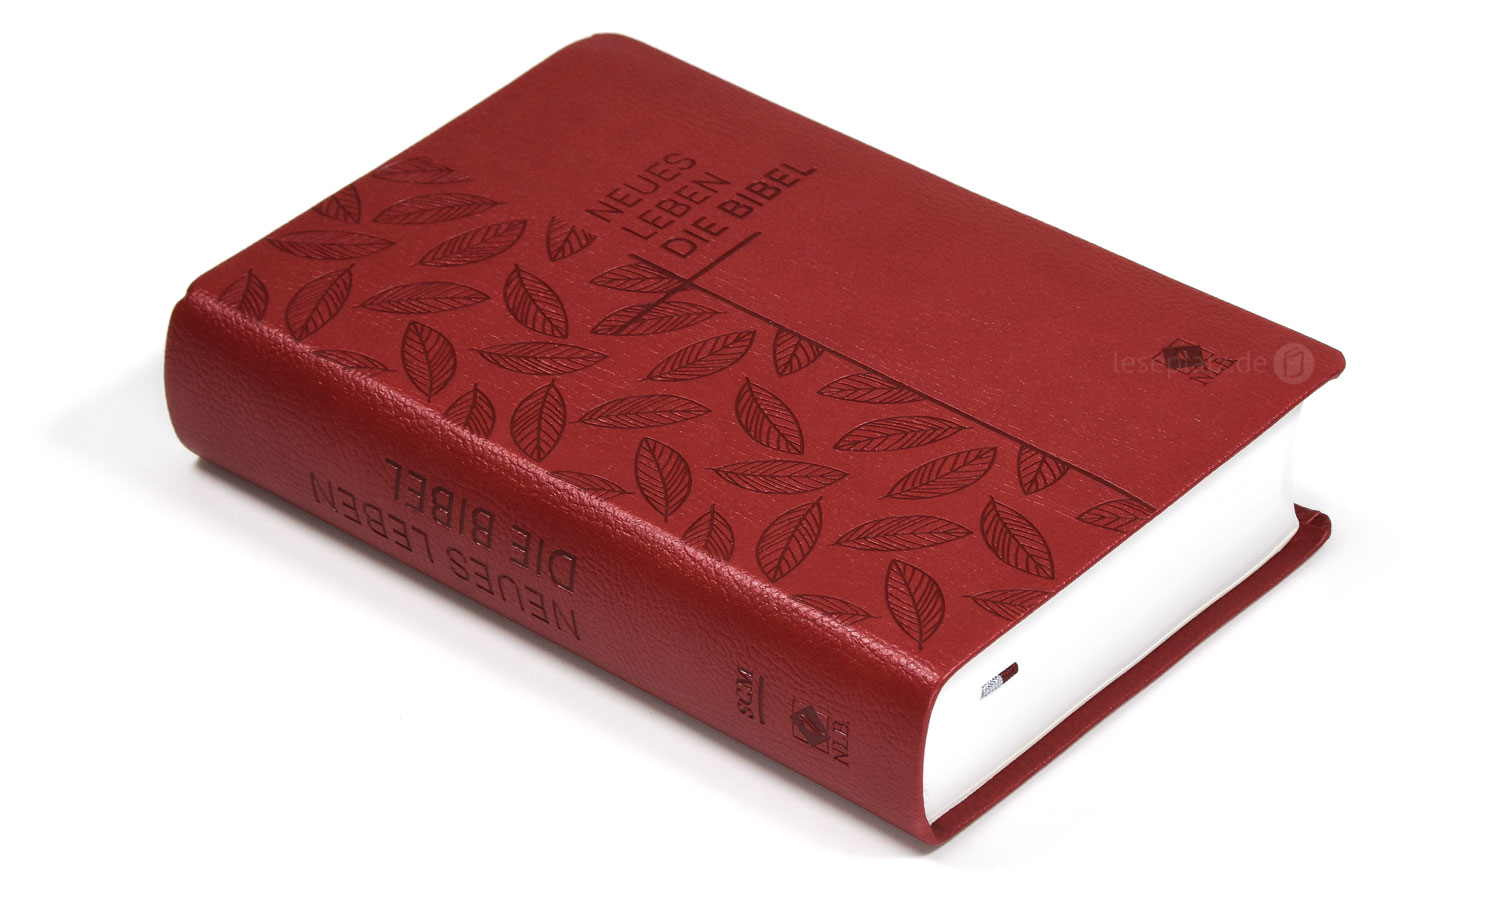 Neues Leben. Die Bibel - Taschenausgabe - Kunstleder rot